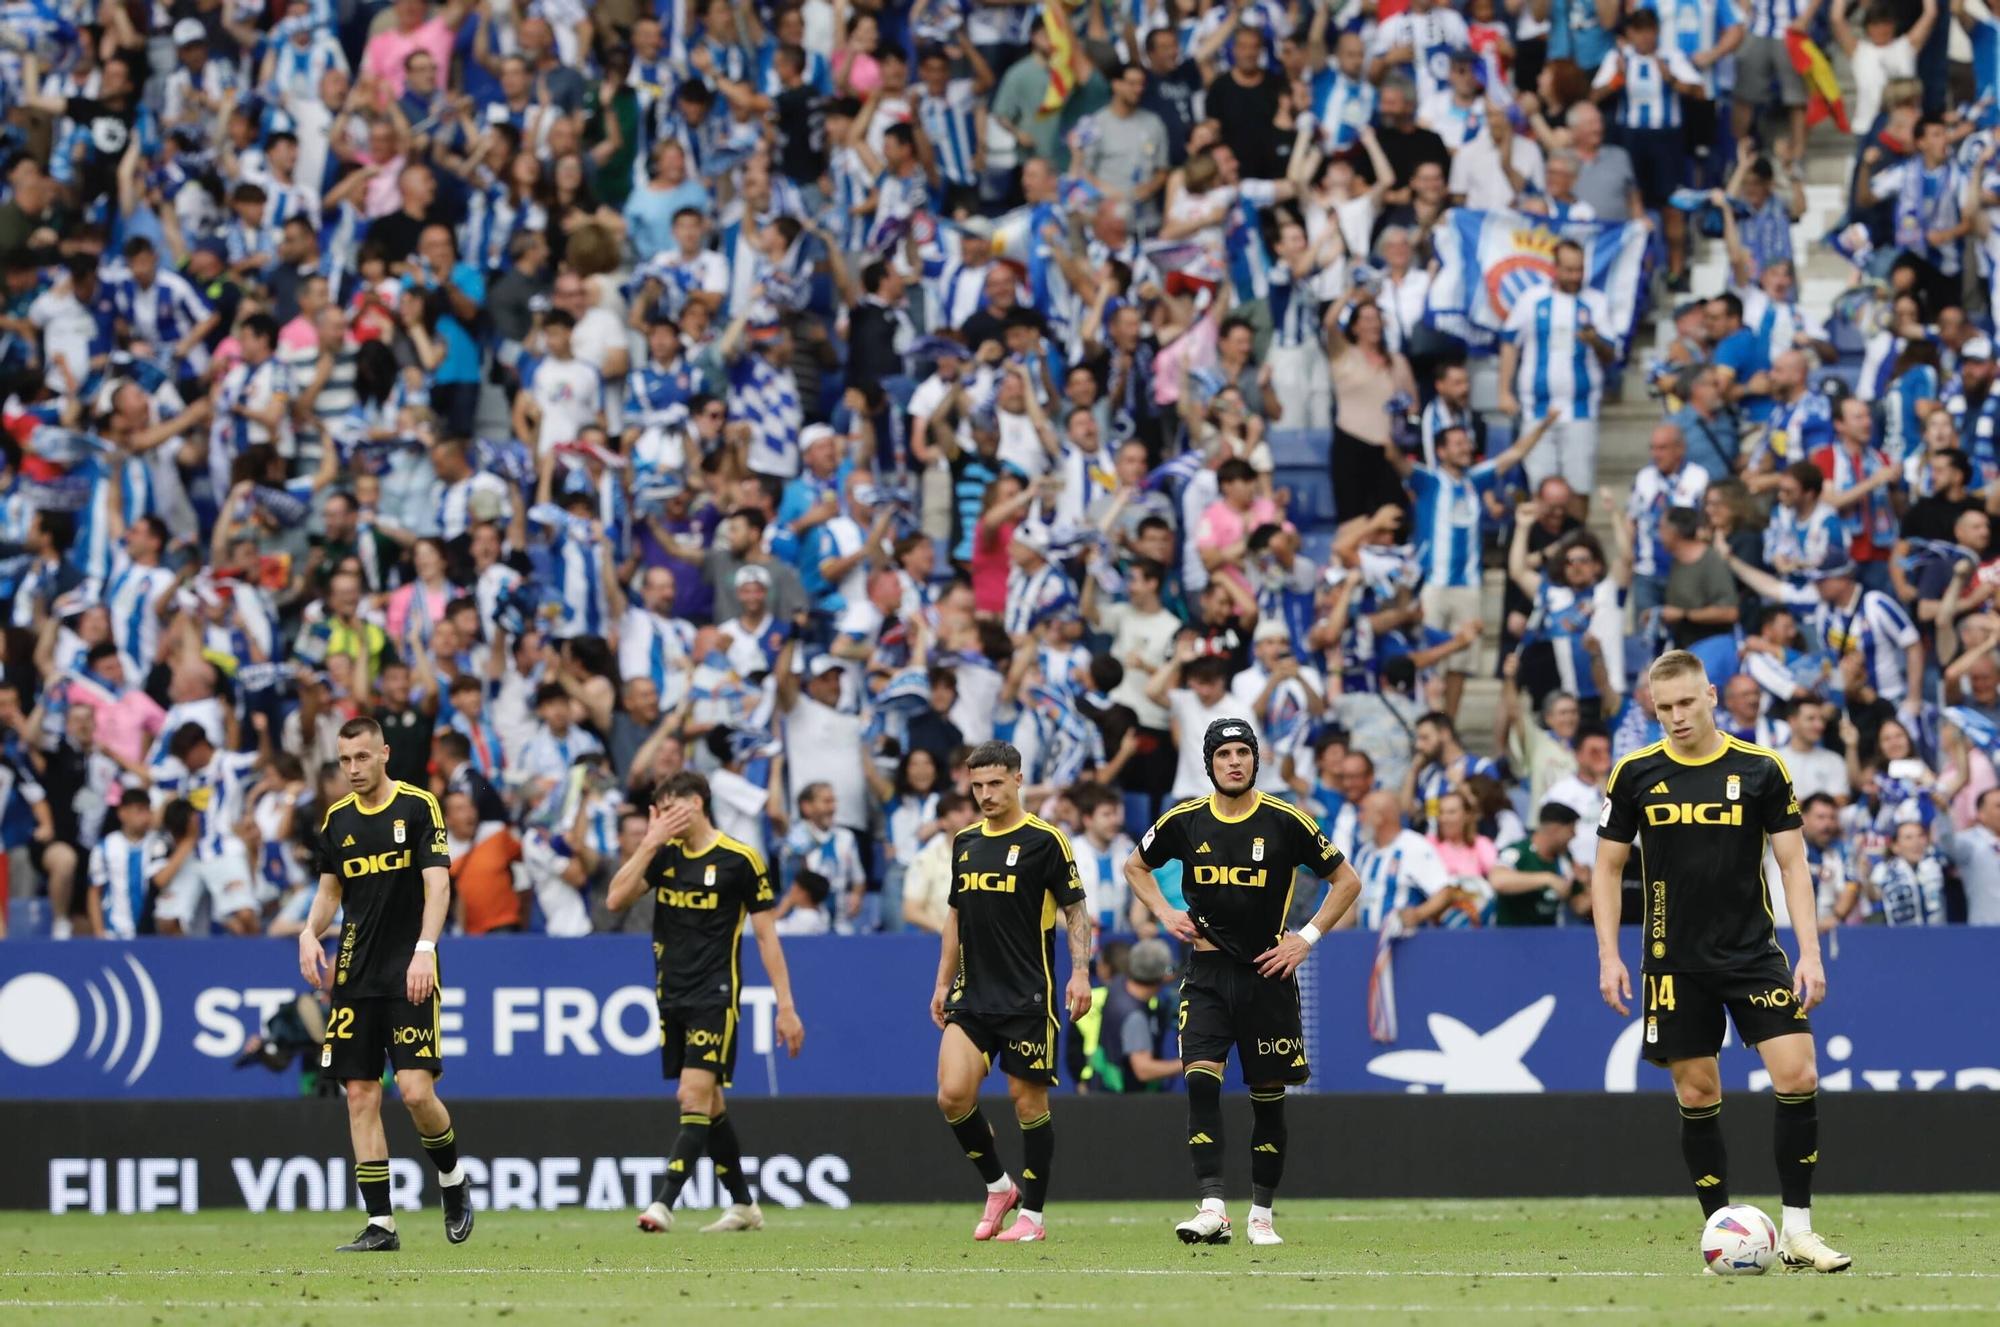 EN IMÁGENES: Así fue el partido entre el Espanyol y el Real Oviedo por el ascenso a Primera División